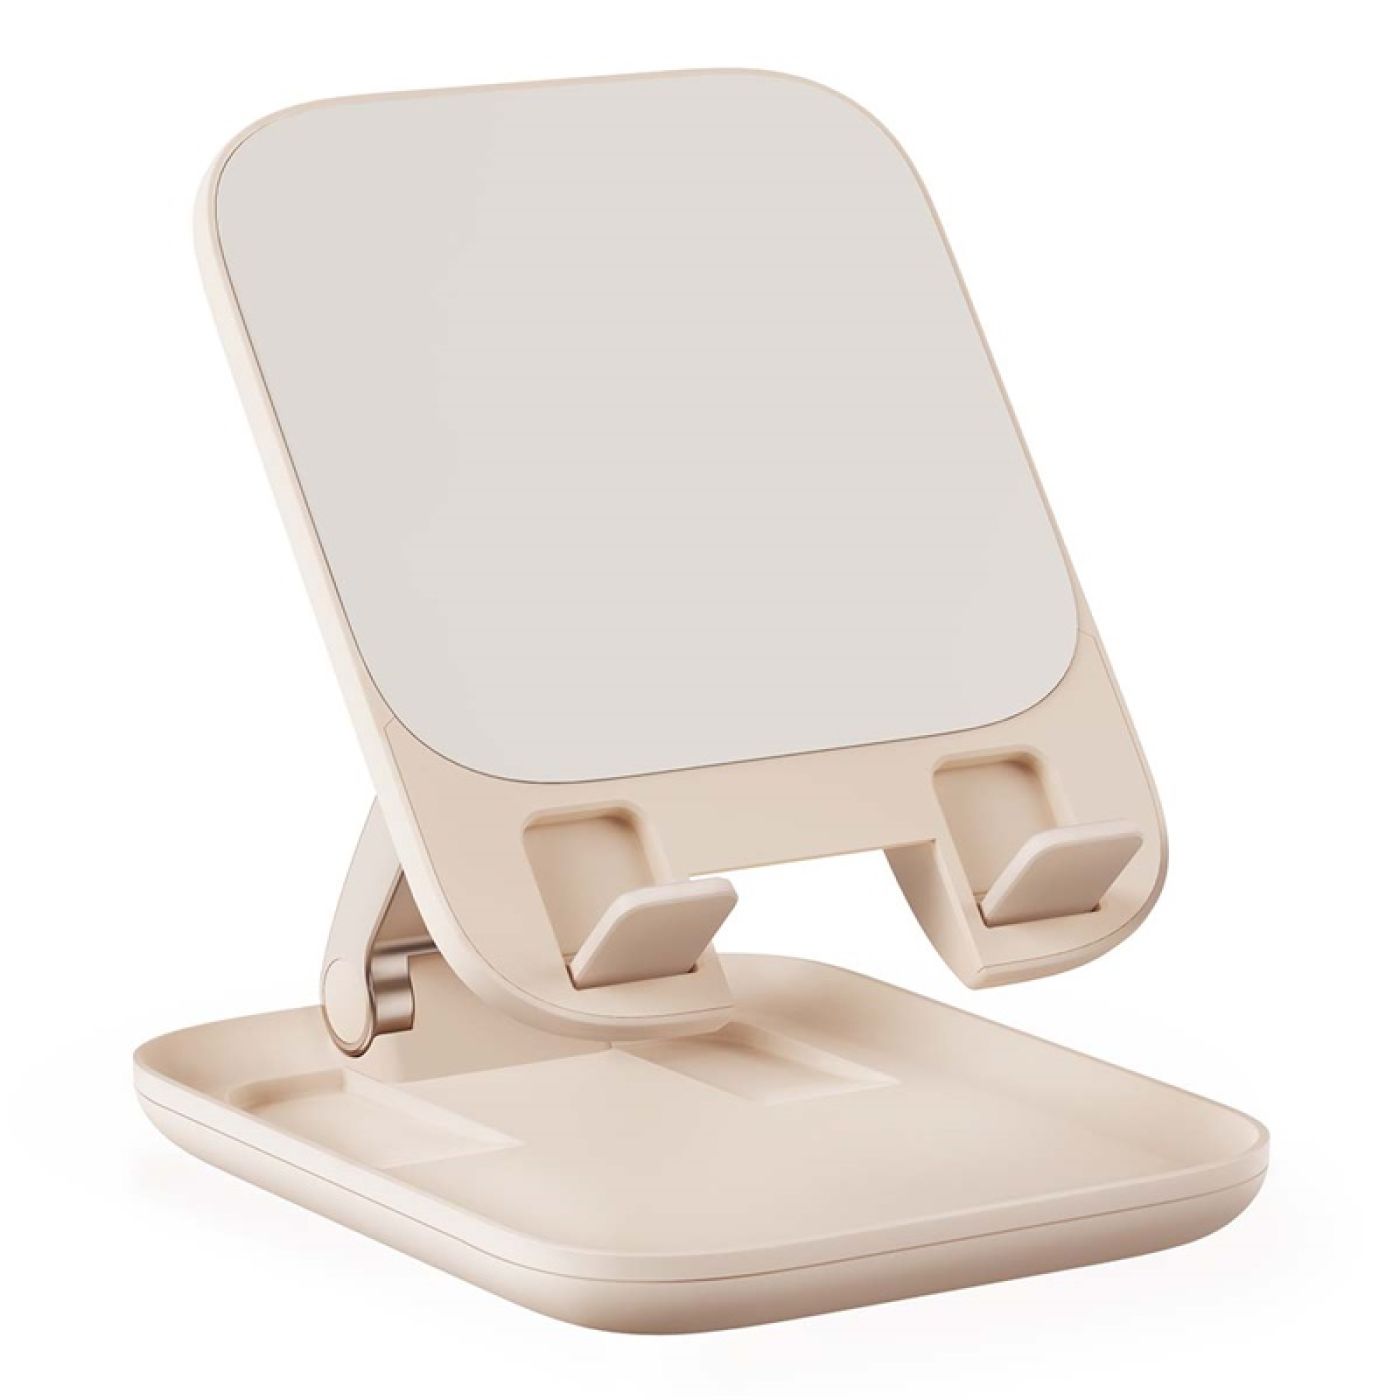 Giá Đỡ Tablet Xếp Gọn Baseus Seashell Series Folding Tablet Stand